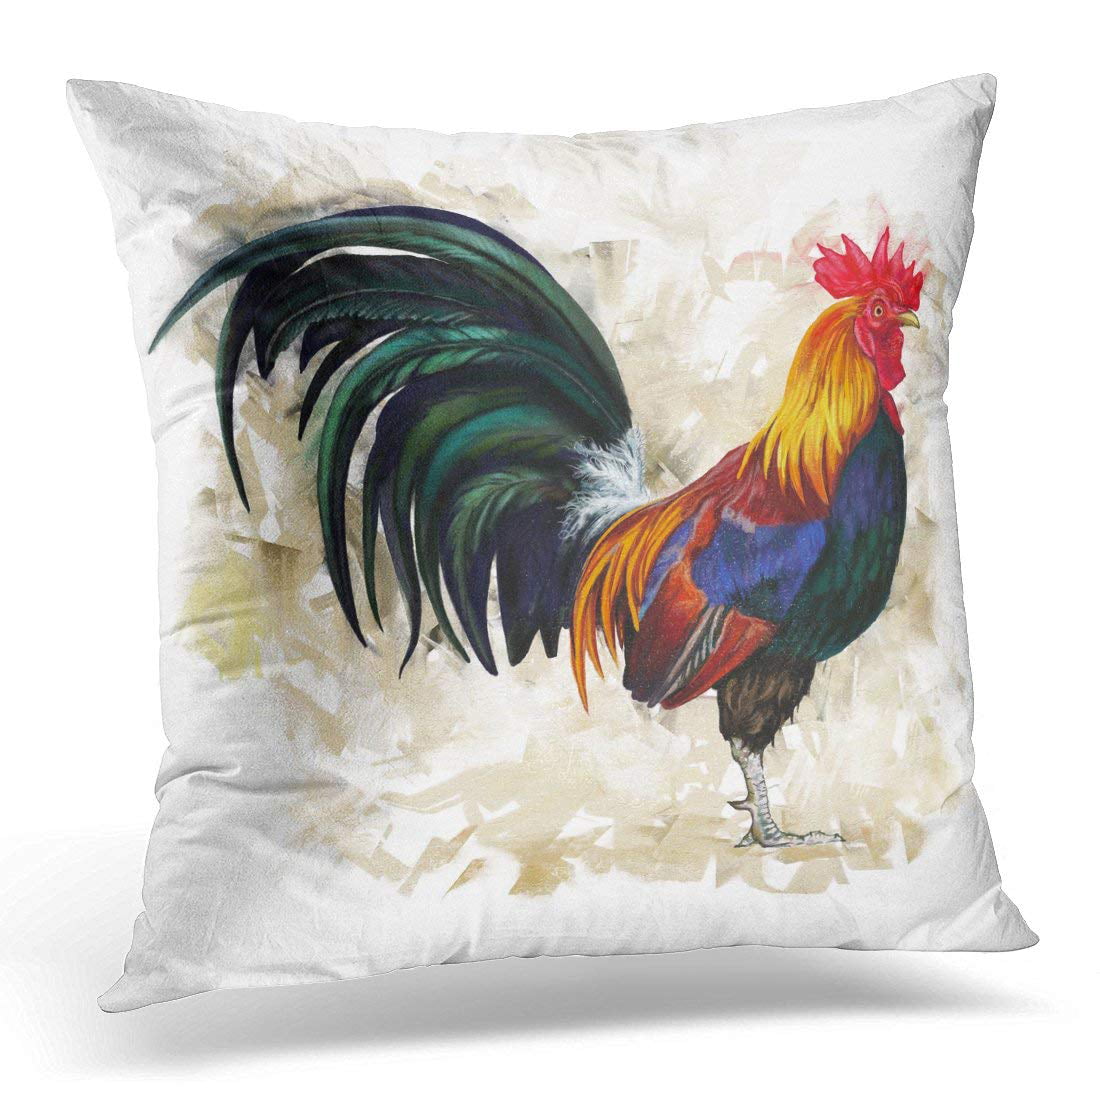 Rooster Hooked Pillow 18" Indoor Outdoor